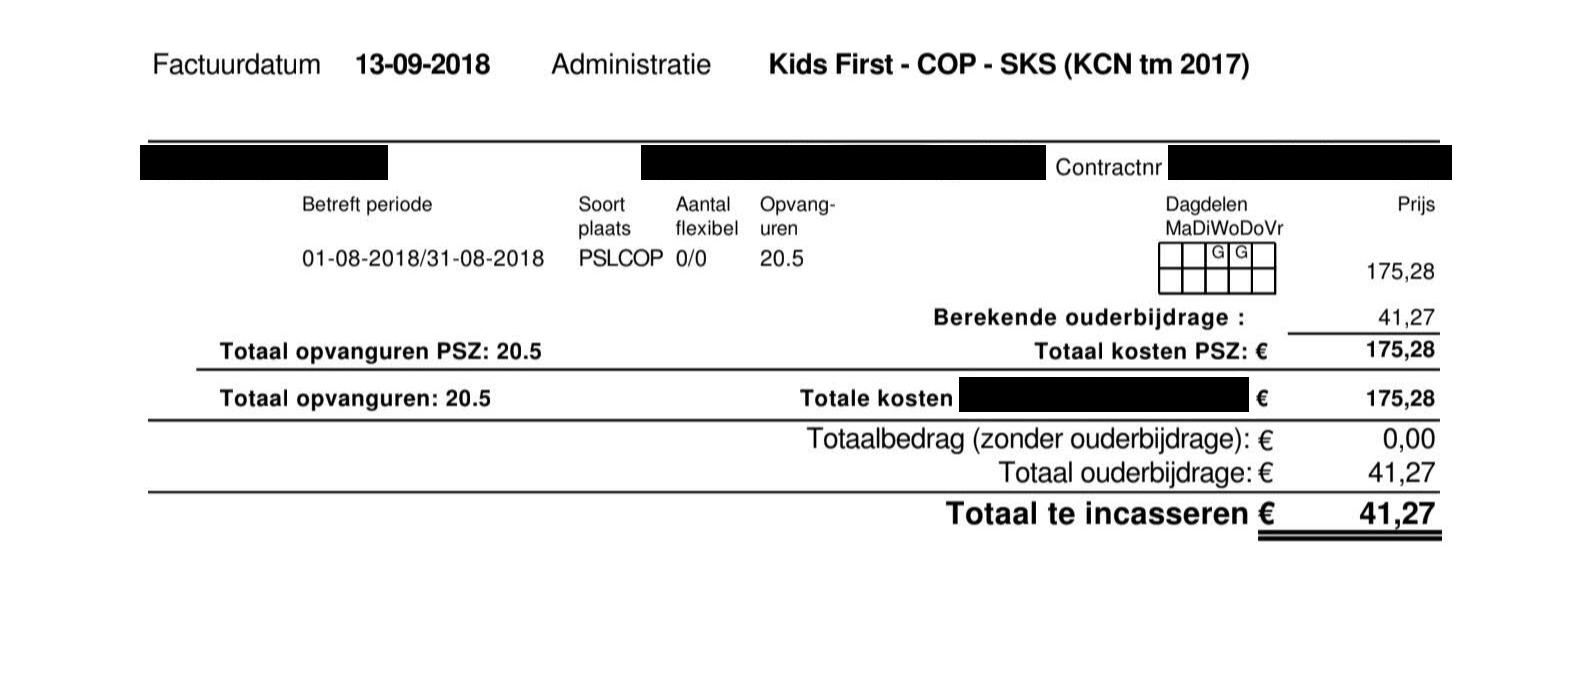 Наш счет на оплату голландского детского сада